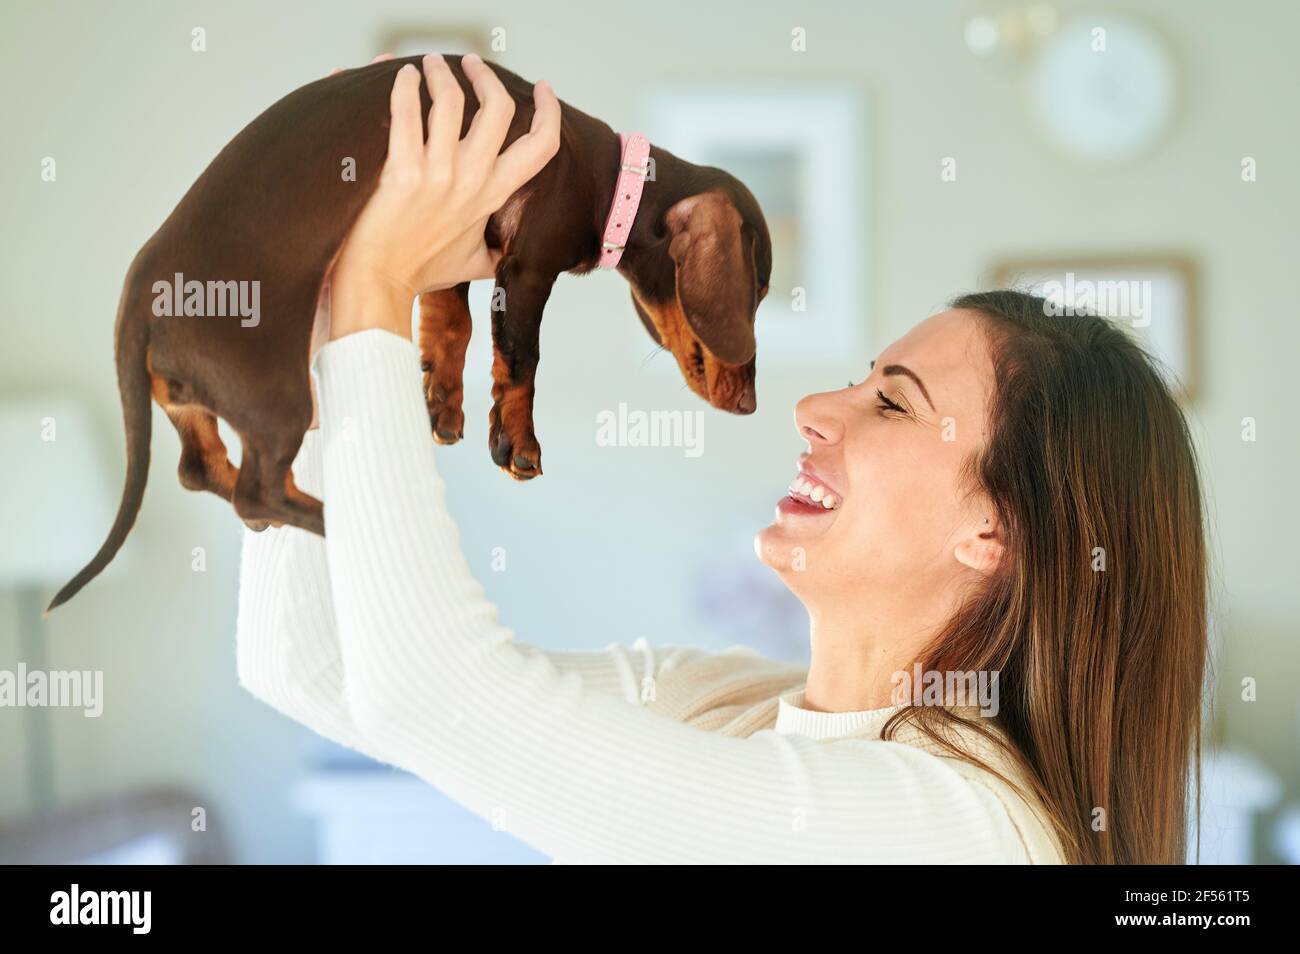 Lächelnde Frau mit braunem Haar, die den Dachshund-Hund angreift Zu Hause Stockfoto